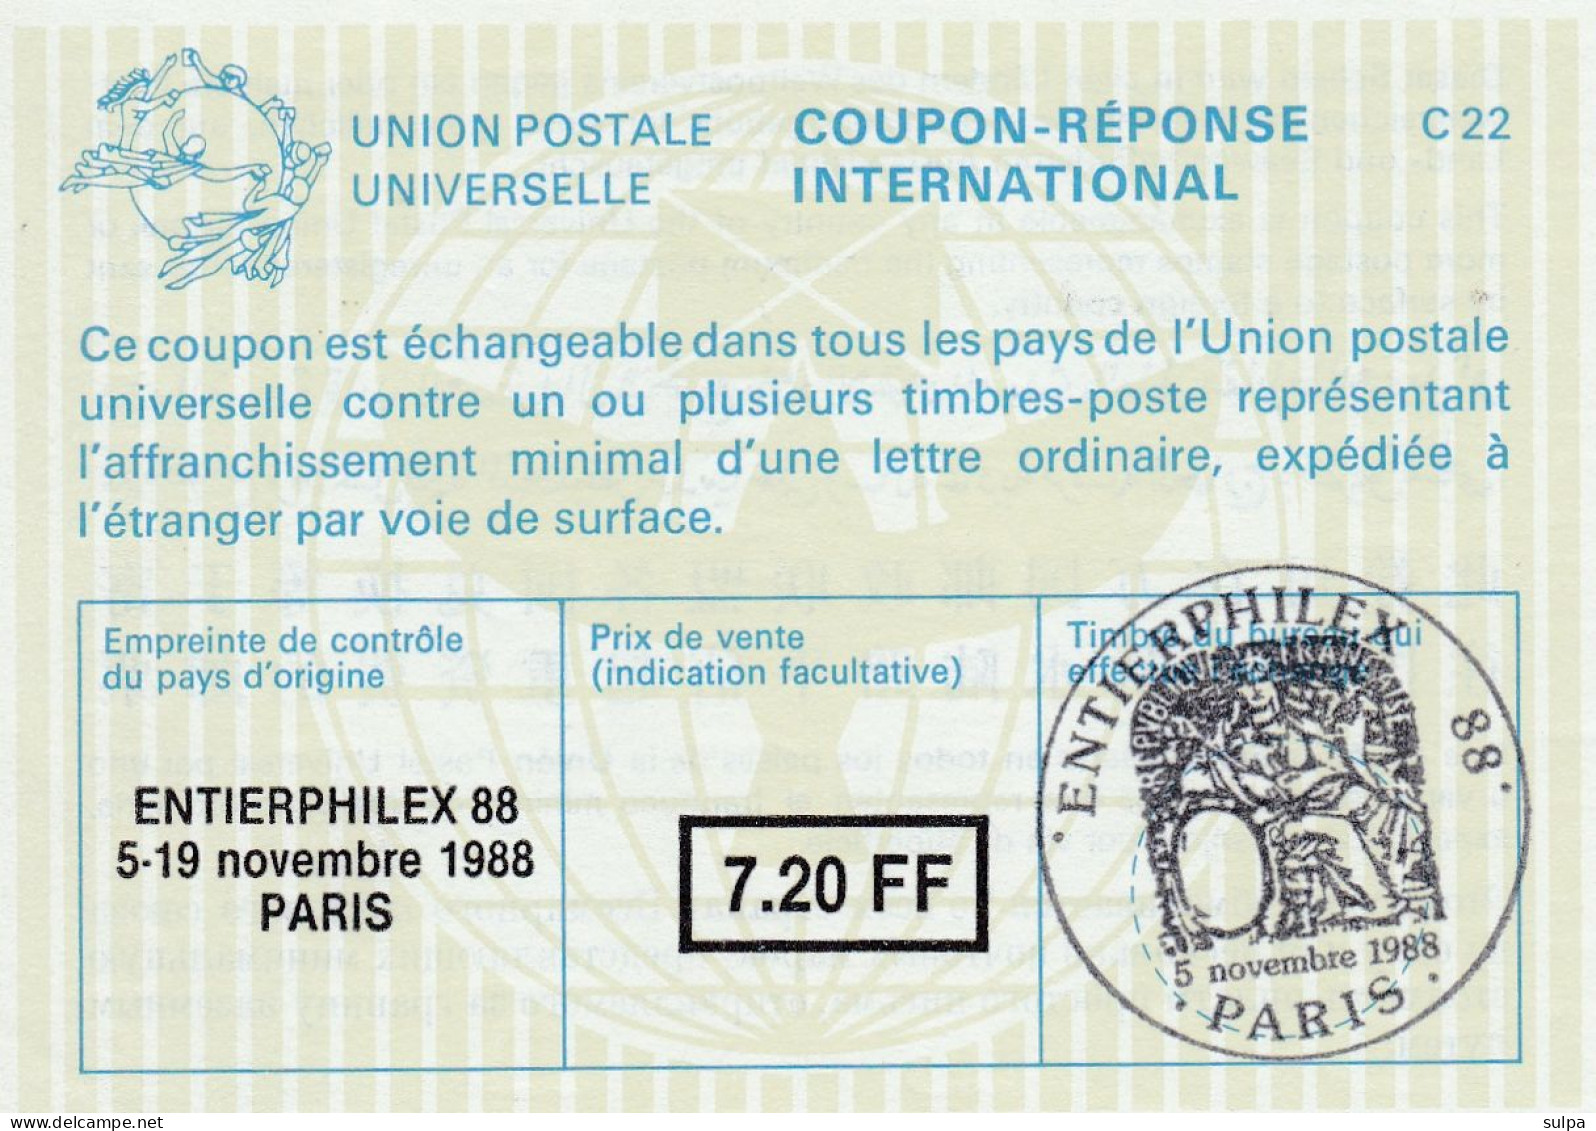 Coupon-réponse PARIS 1988 - Coupons-réponse